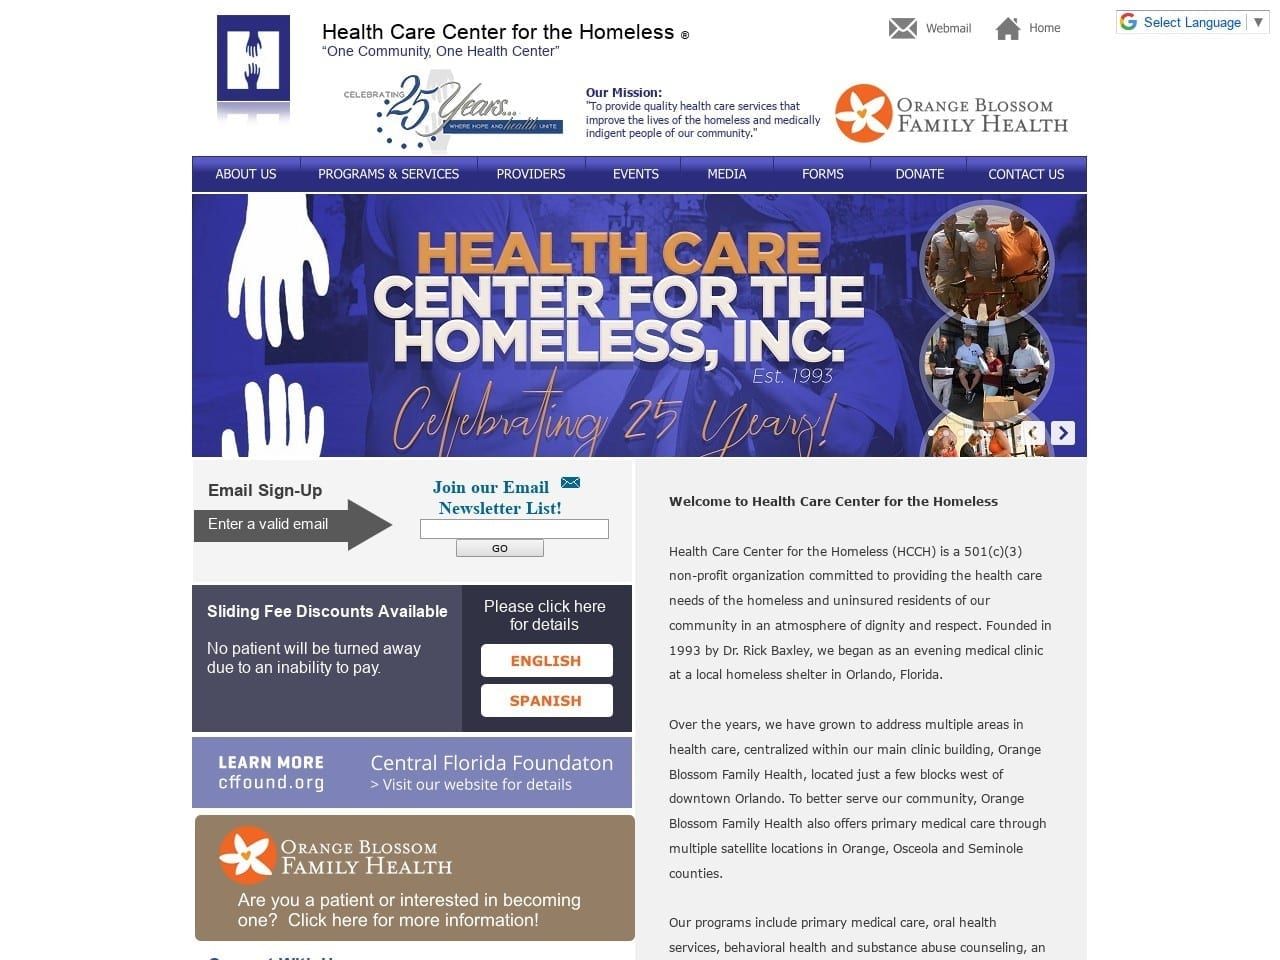 Orange Blossom Family Health Center Website Screenshot from hcch.org